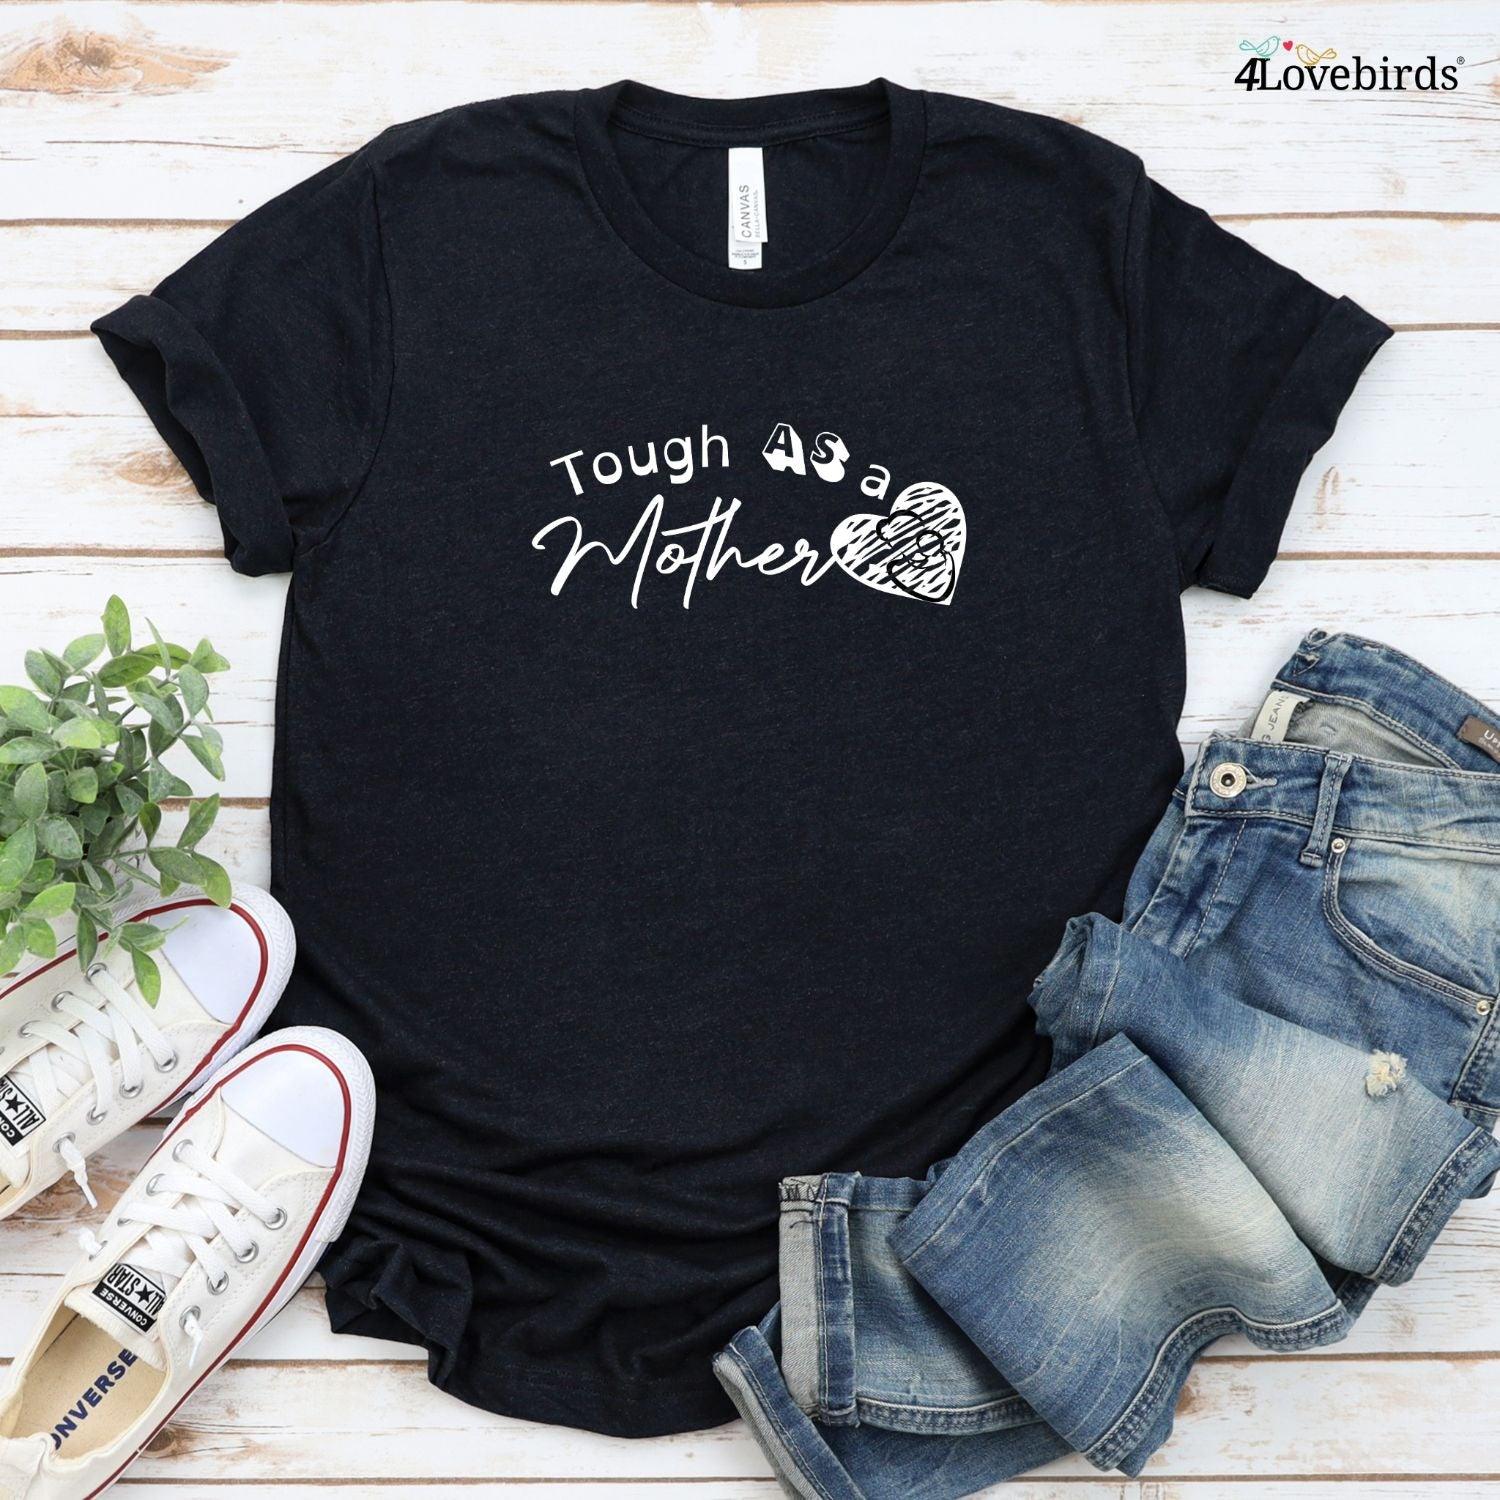 Matching Set for Tough Moms: Hoodie, Shirt, Tee & More! Sweatshirts